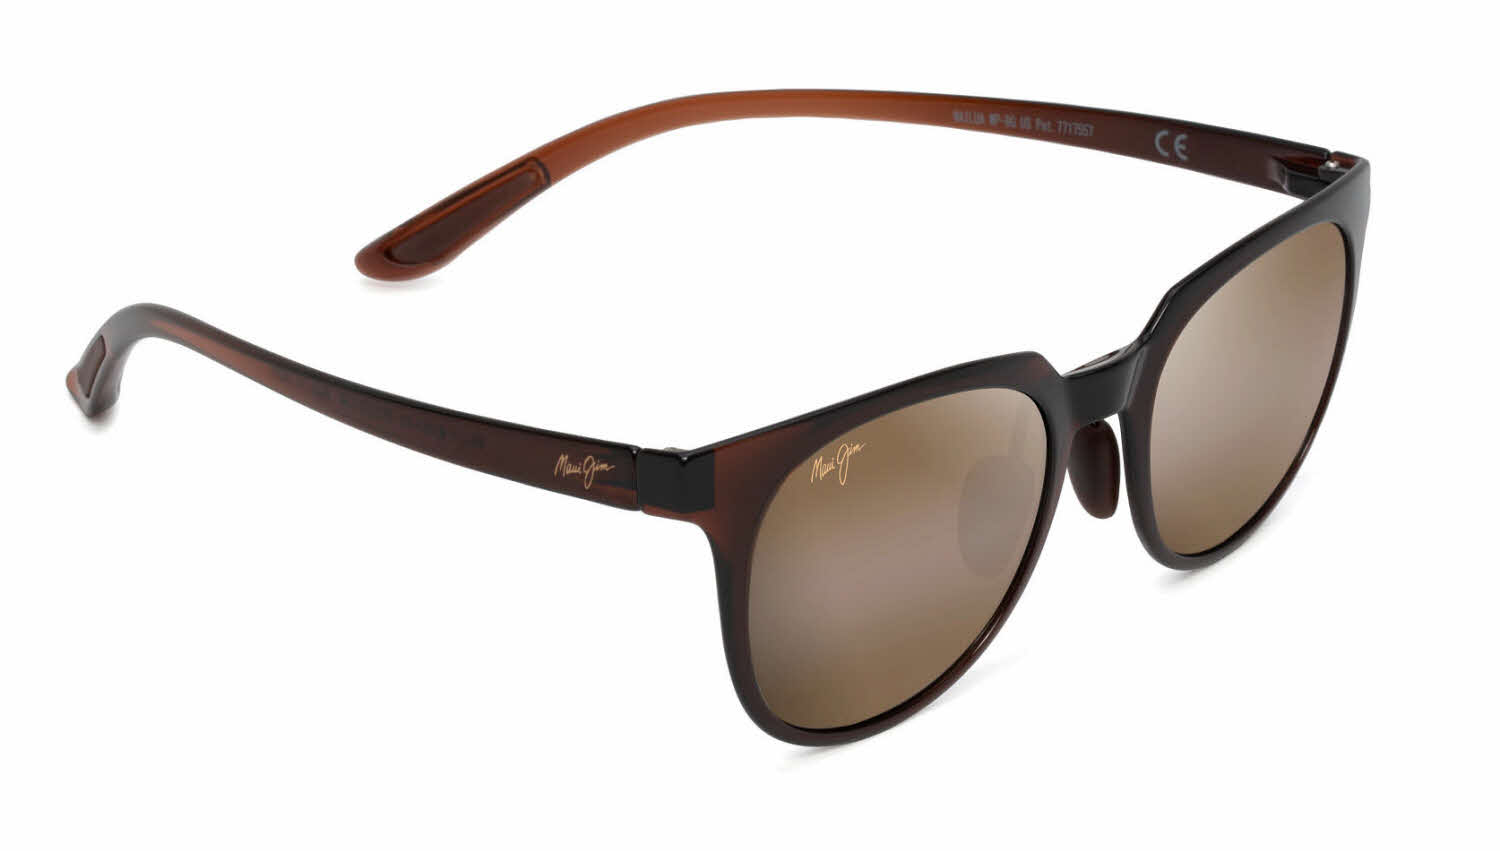 Maui Jim Wailua-454 Sunglasses